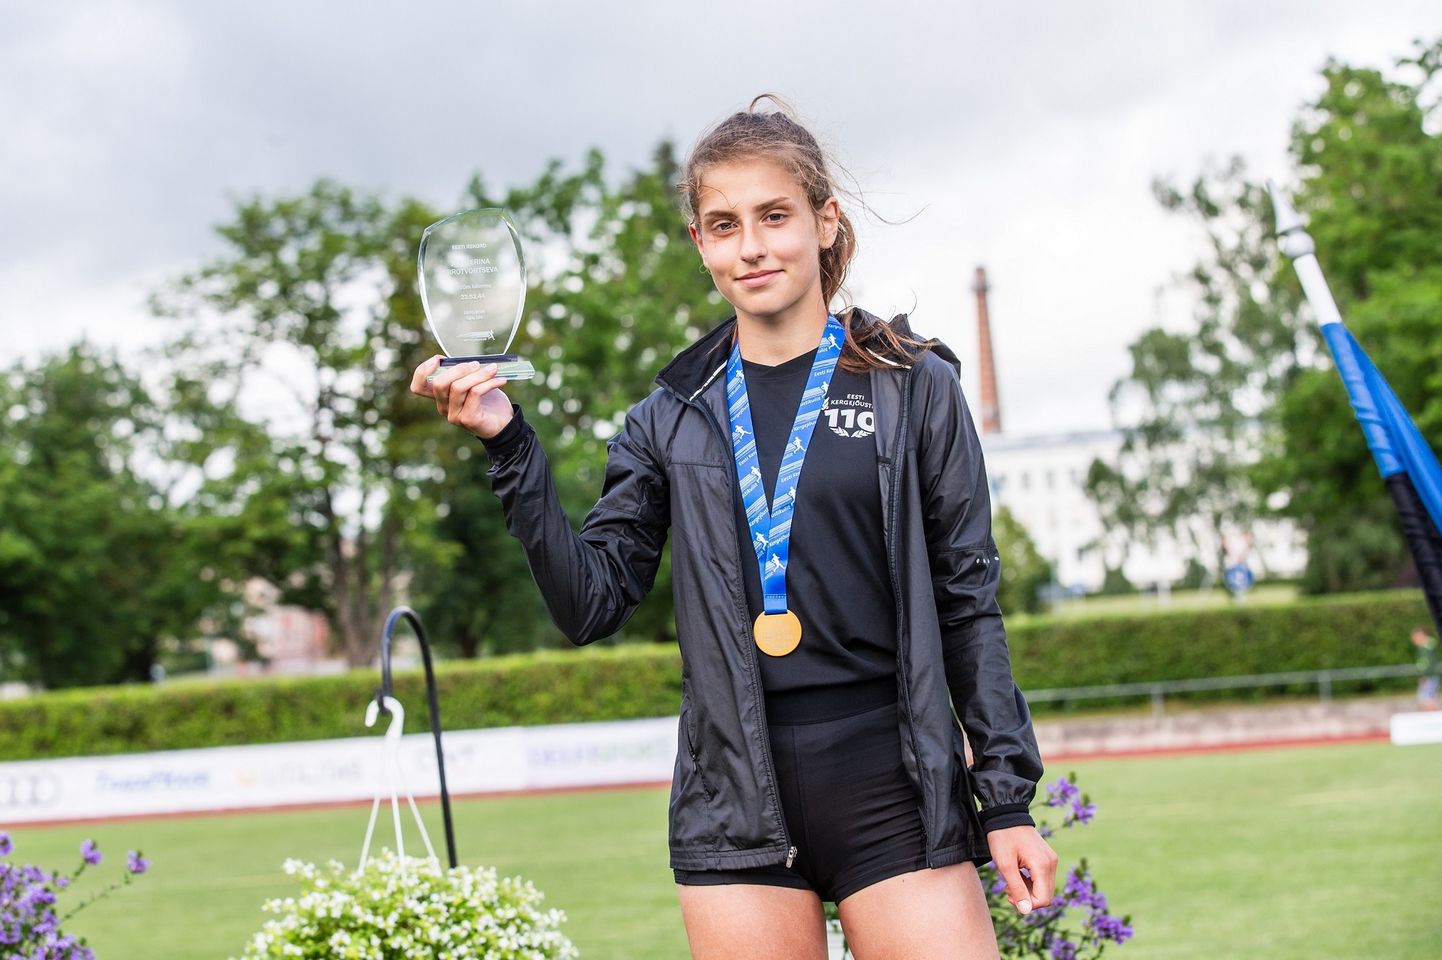 16aastane Jekaterina Mirotvortseva on sel hooajal noppinud järjepanu võite nii oma põhialal käimises kui ka jooksuvõistlustel.